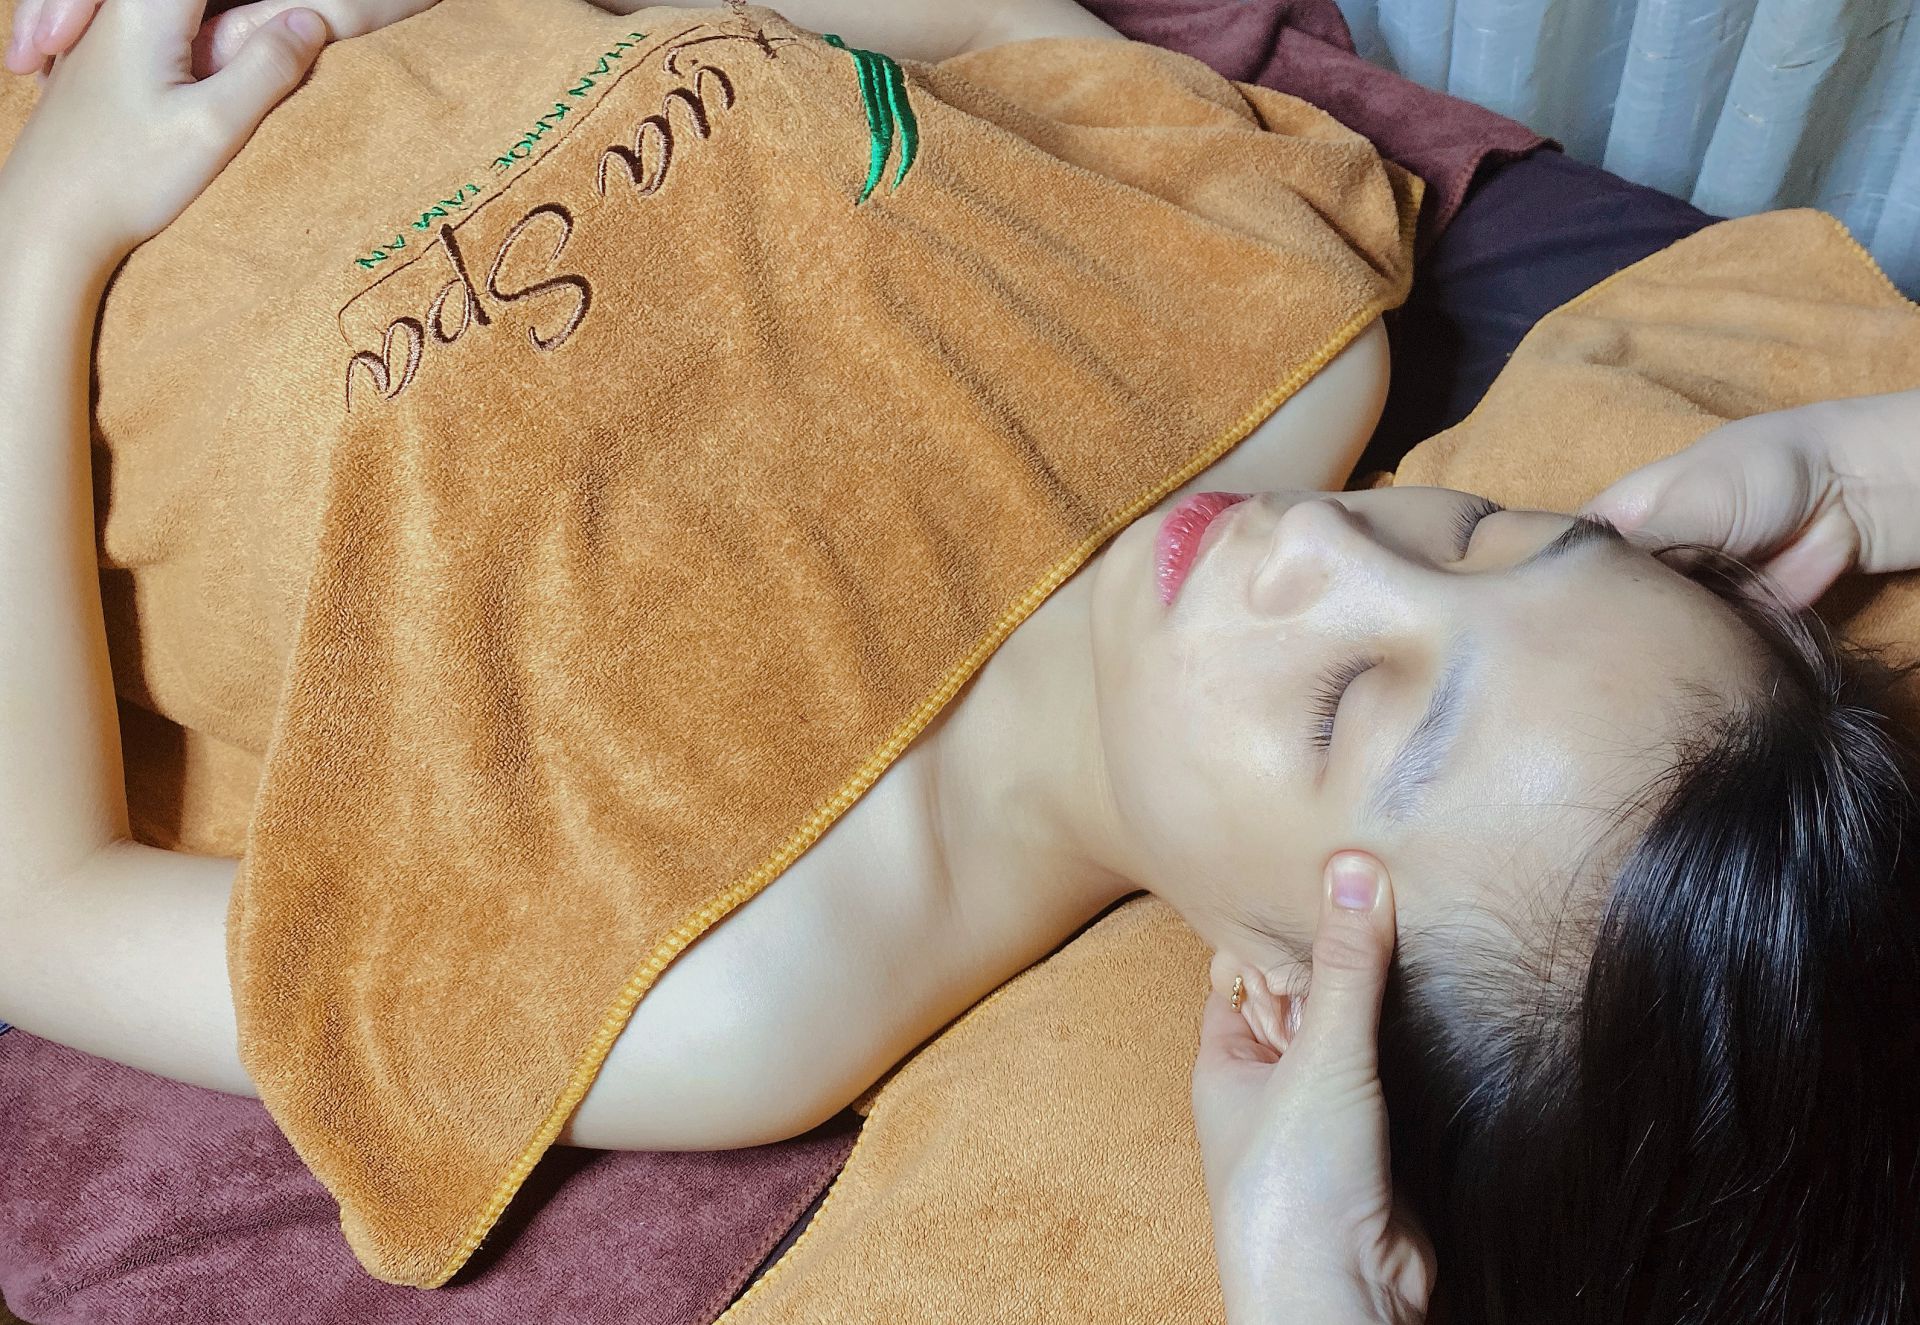 Massage trị đau đầu mất ngủ - Phương pháp hiệu quả dài lâu